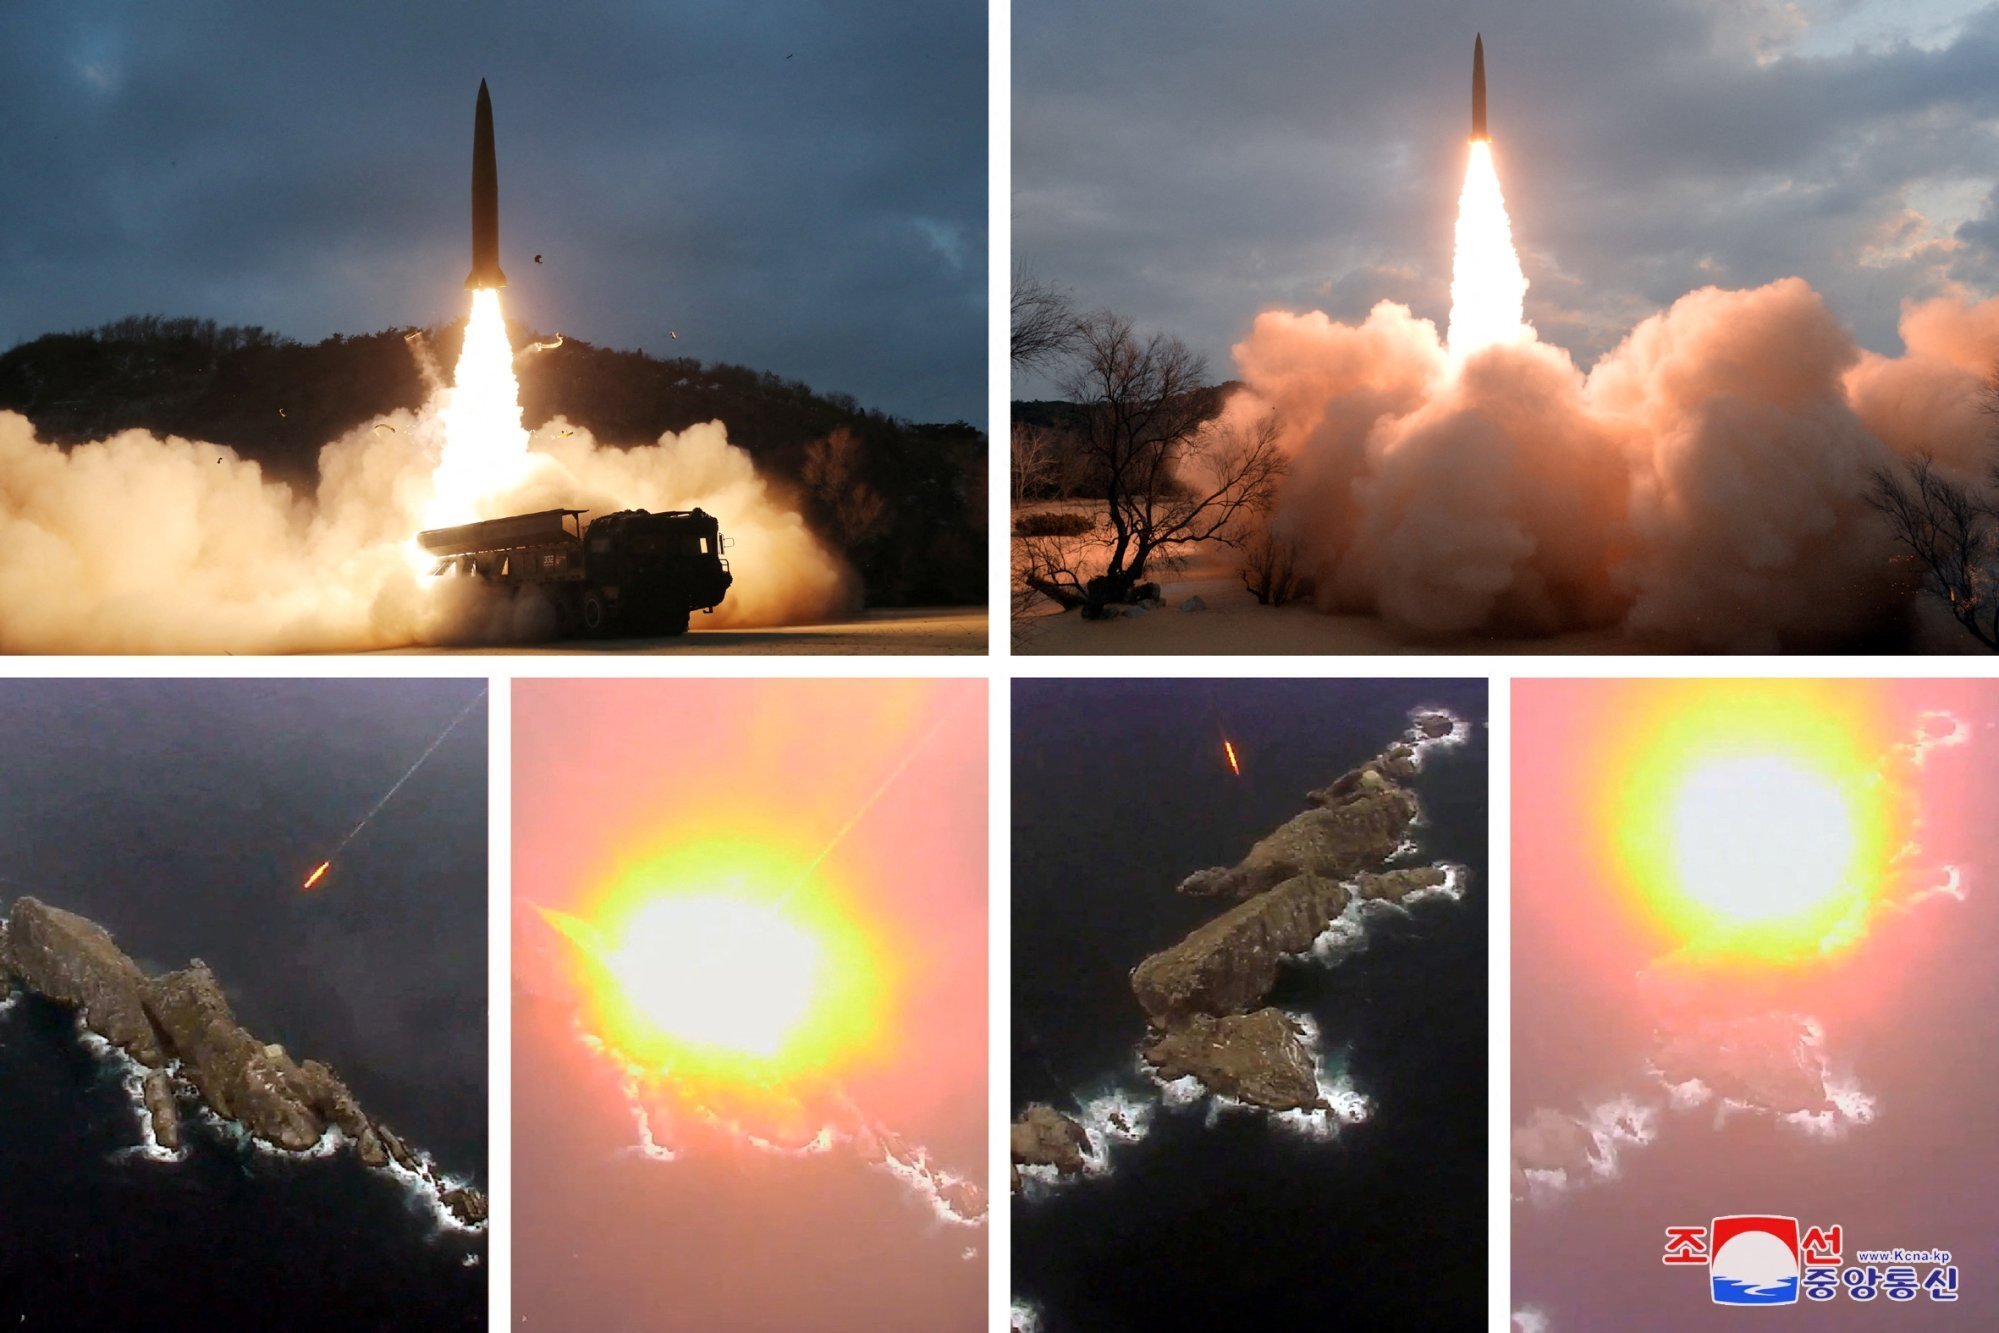 Hòn đảo bị dàn tên lửa Triều Tiên bắn phá nhiều nhất có gì đặc biệt?